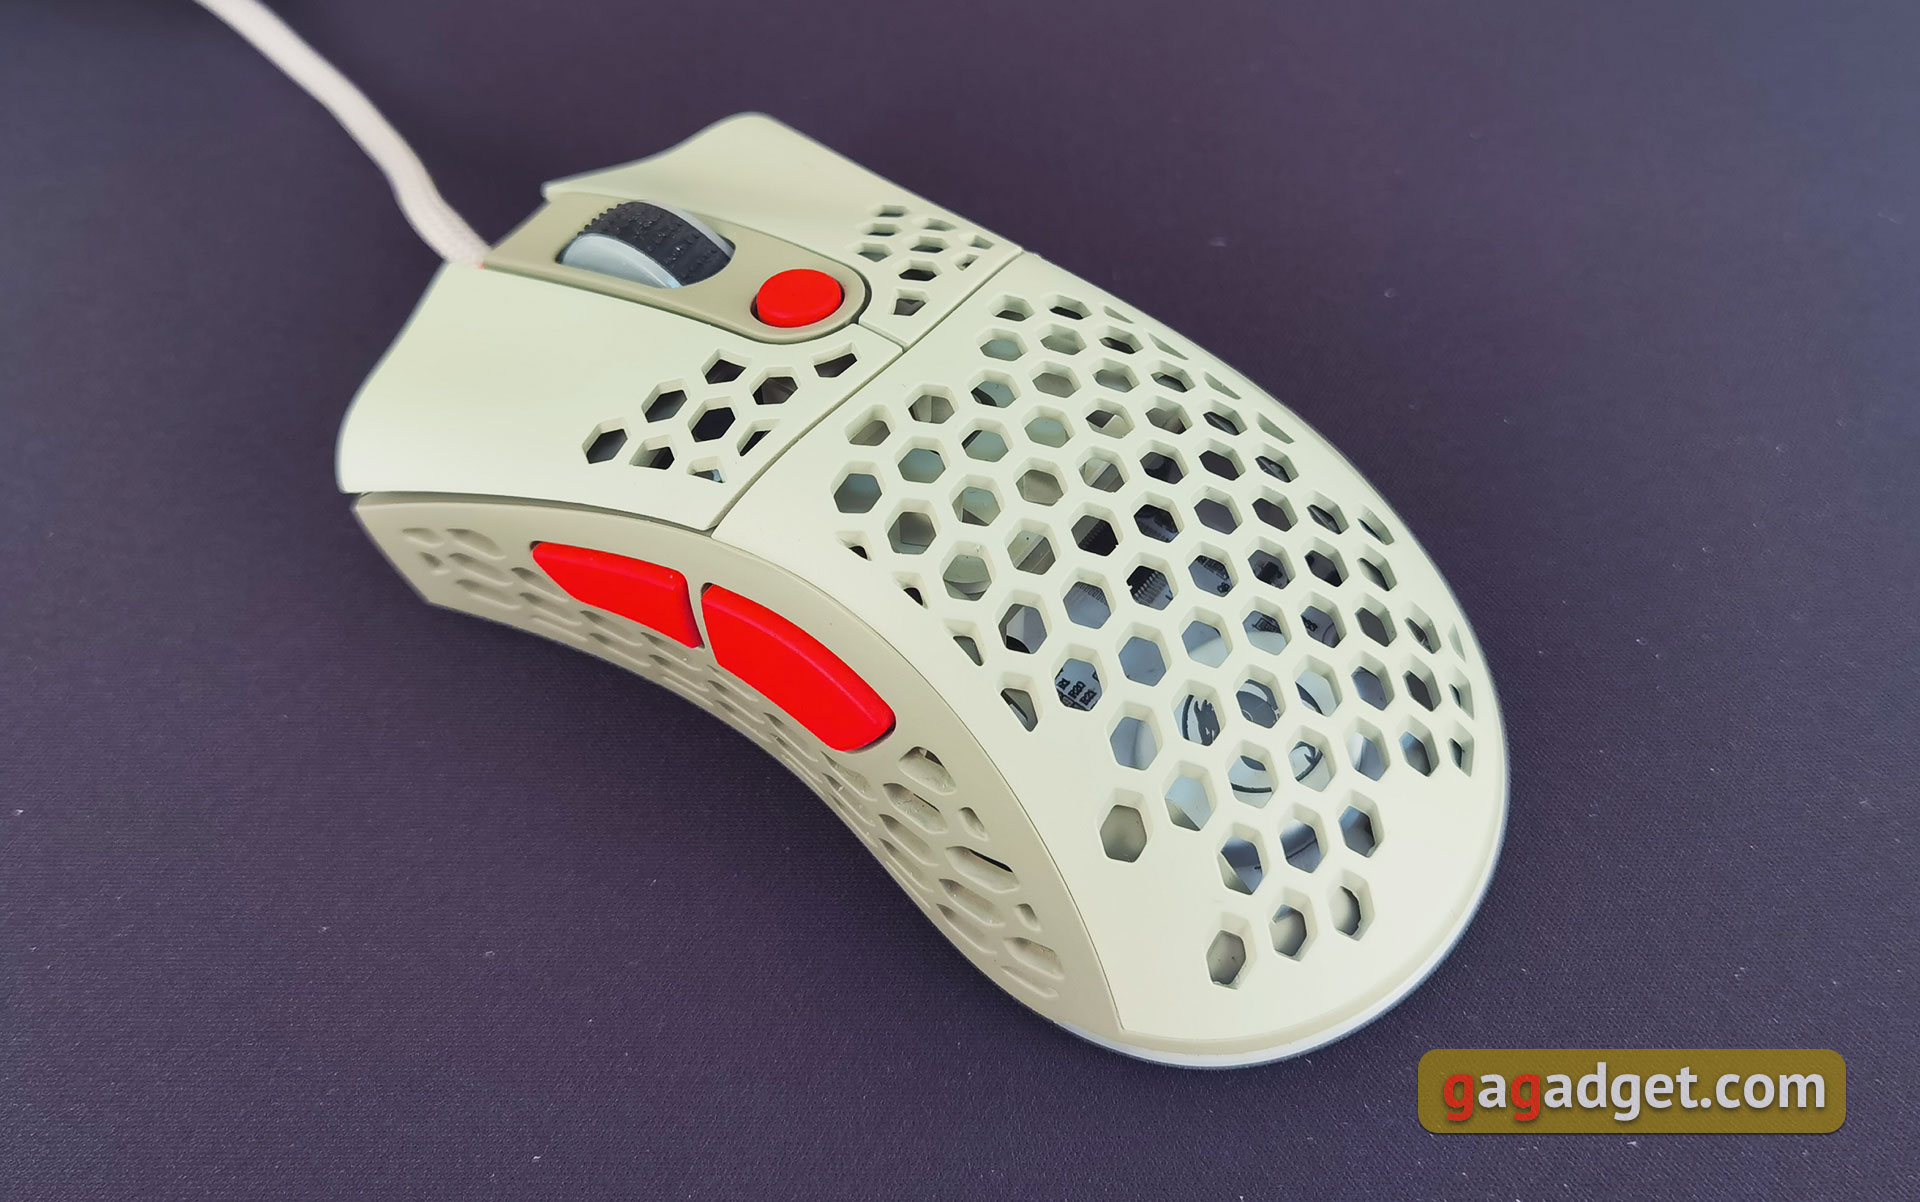 2E Gaming HyperSpeed Pro Überblick: Eine leichte Gaming-Maus mit einem großartigen Sensor-19